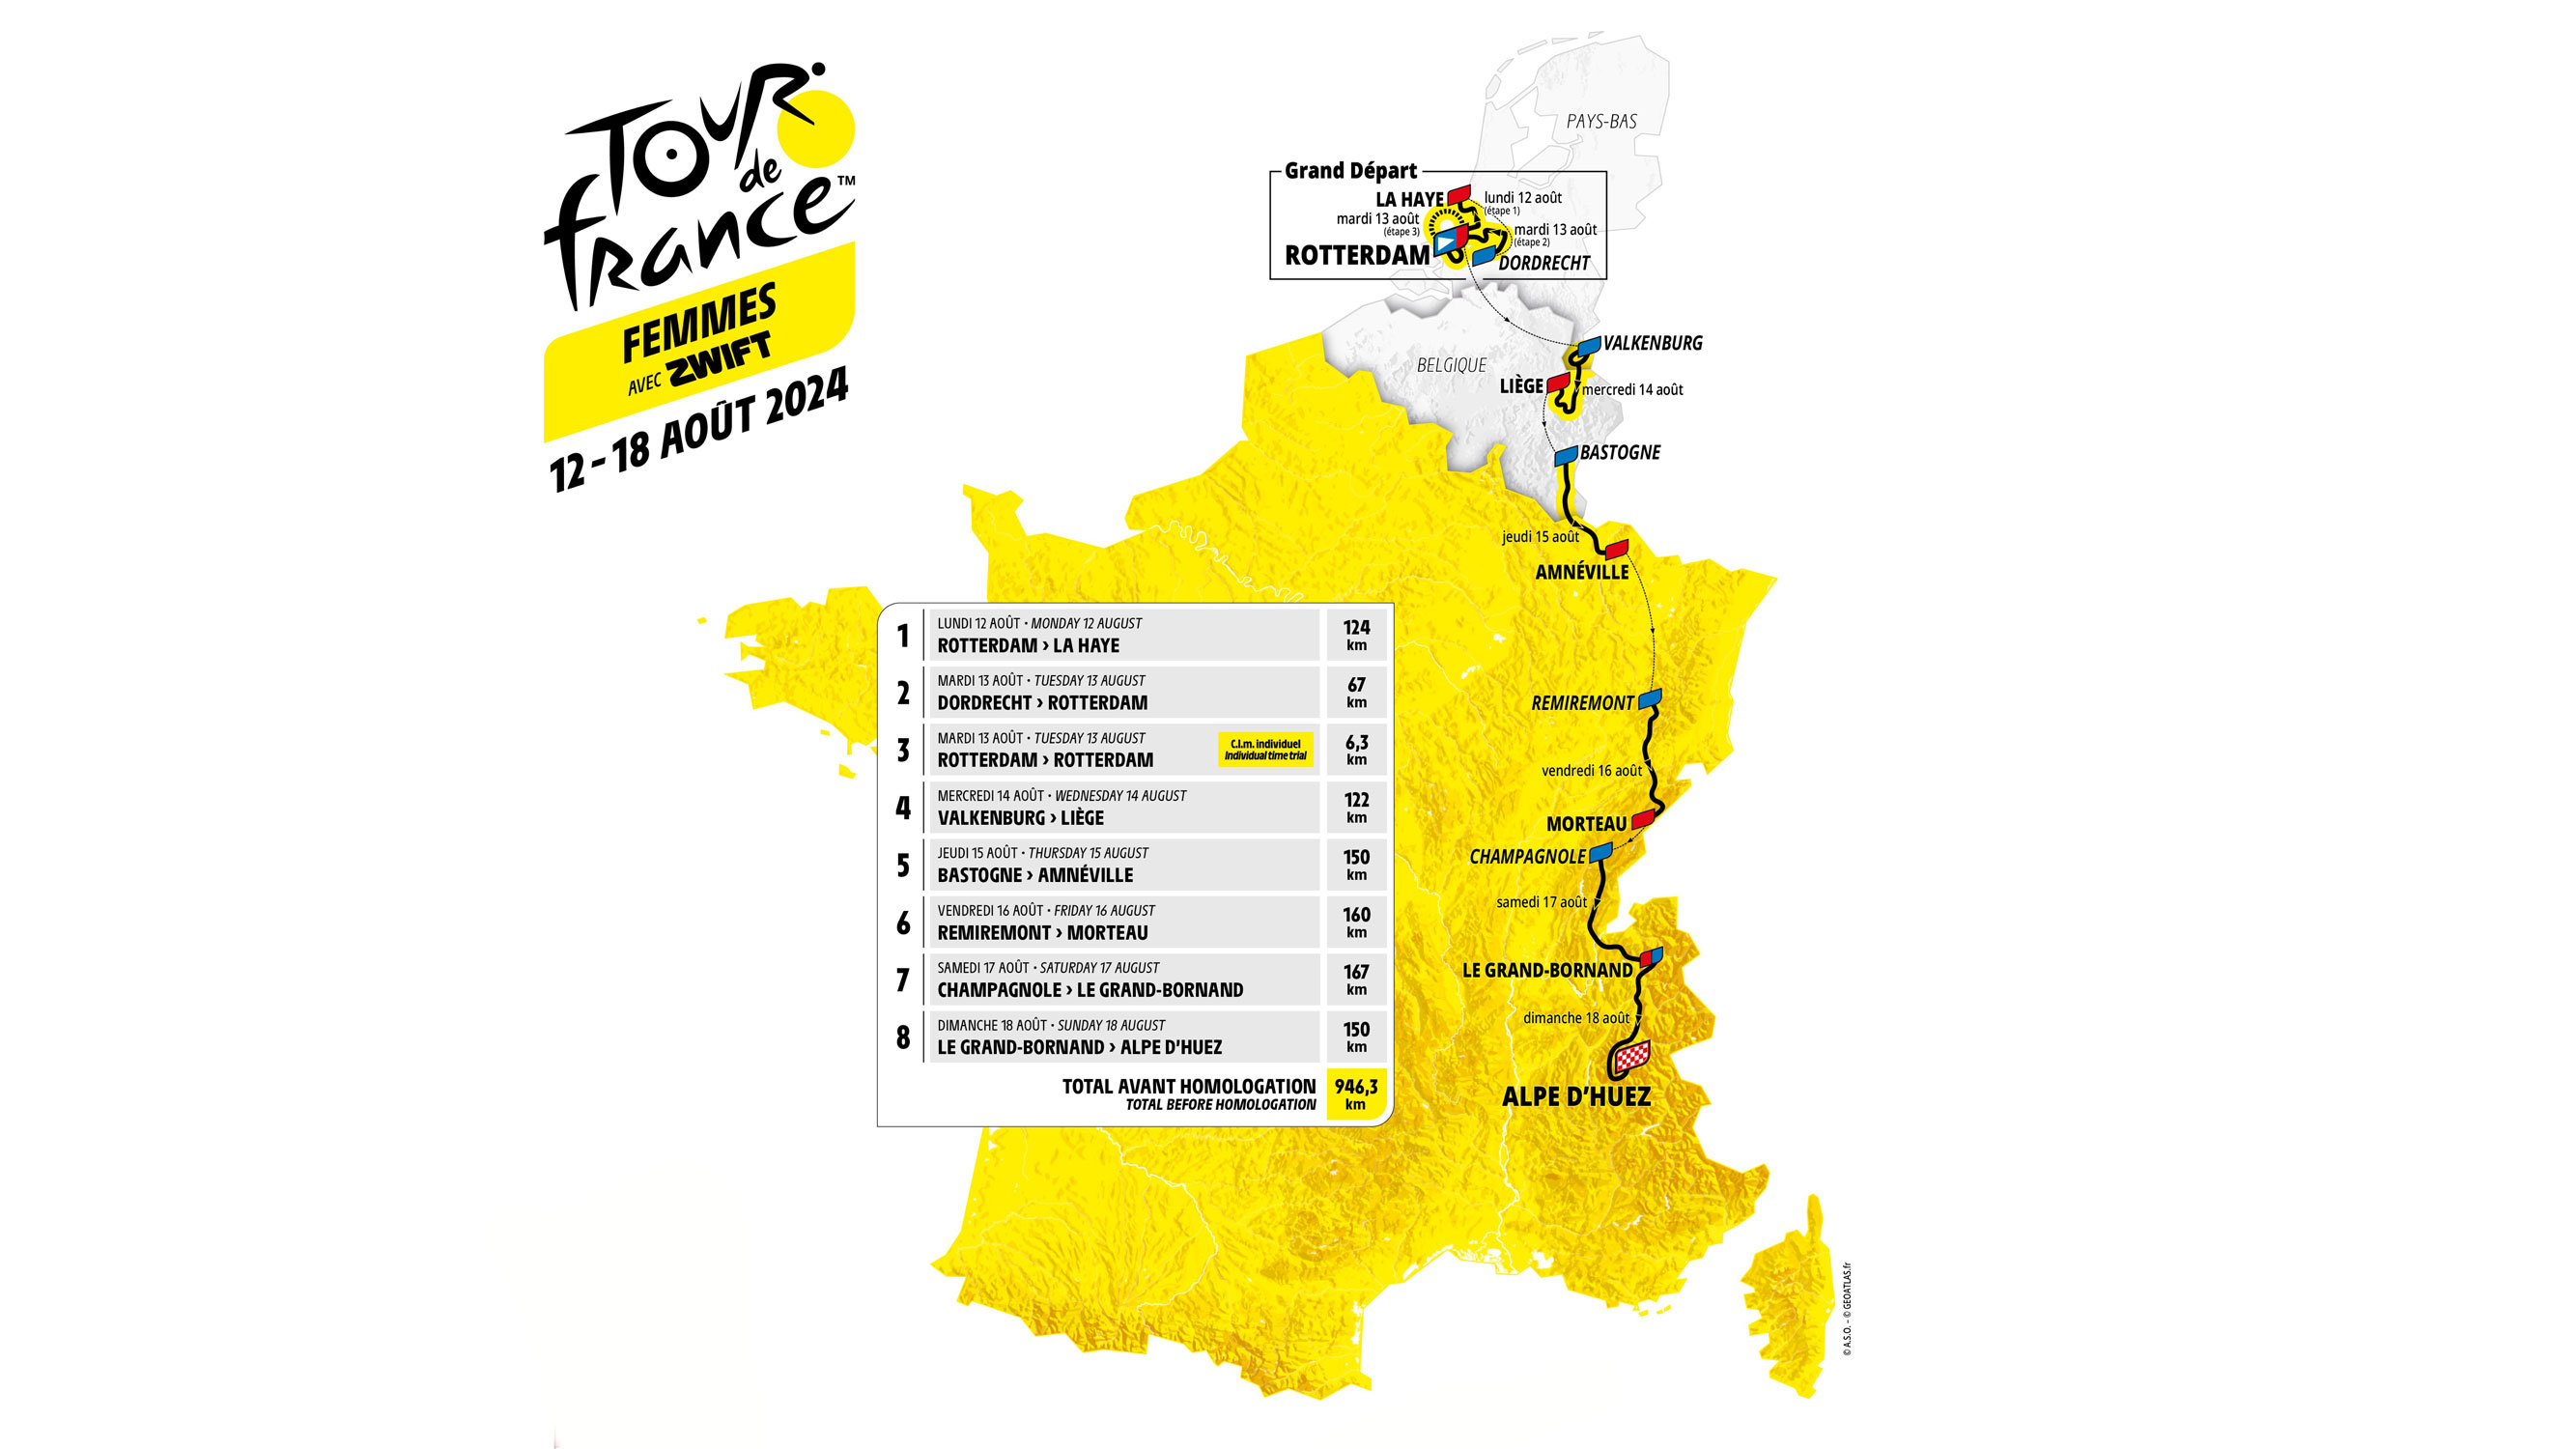 Présentation du parcours Tour de France & Tour de France Femmes 2024